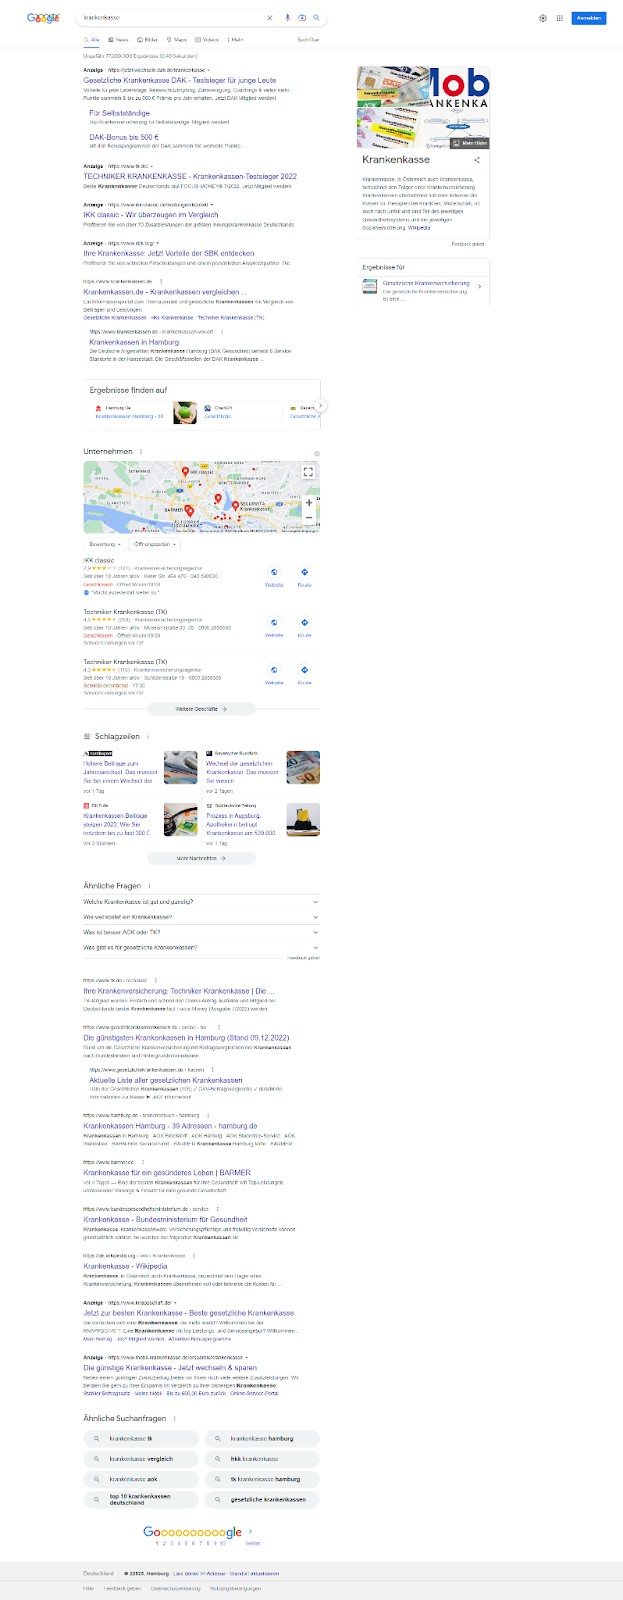 Screenshot der Suchergebnisse für das Keyword „Krankenkasse“.